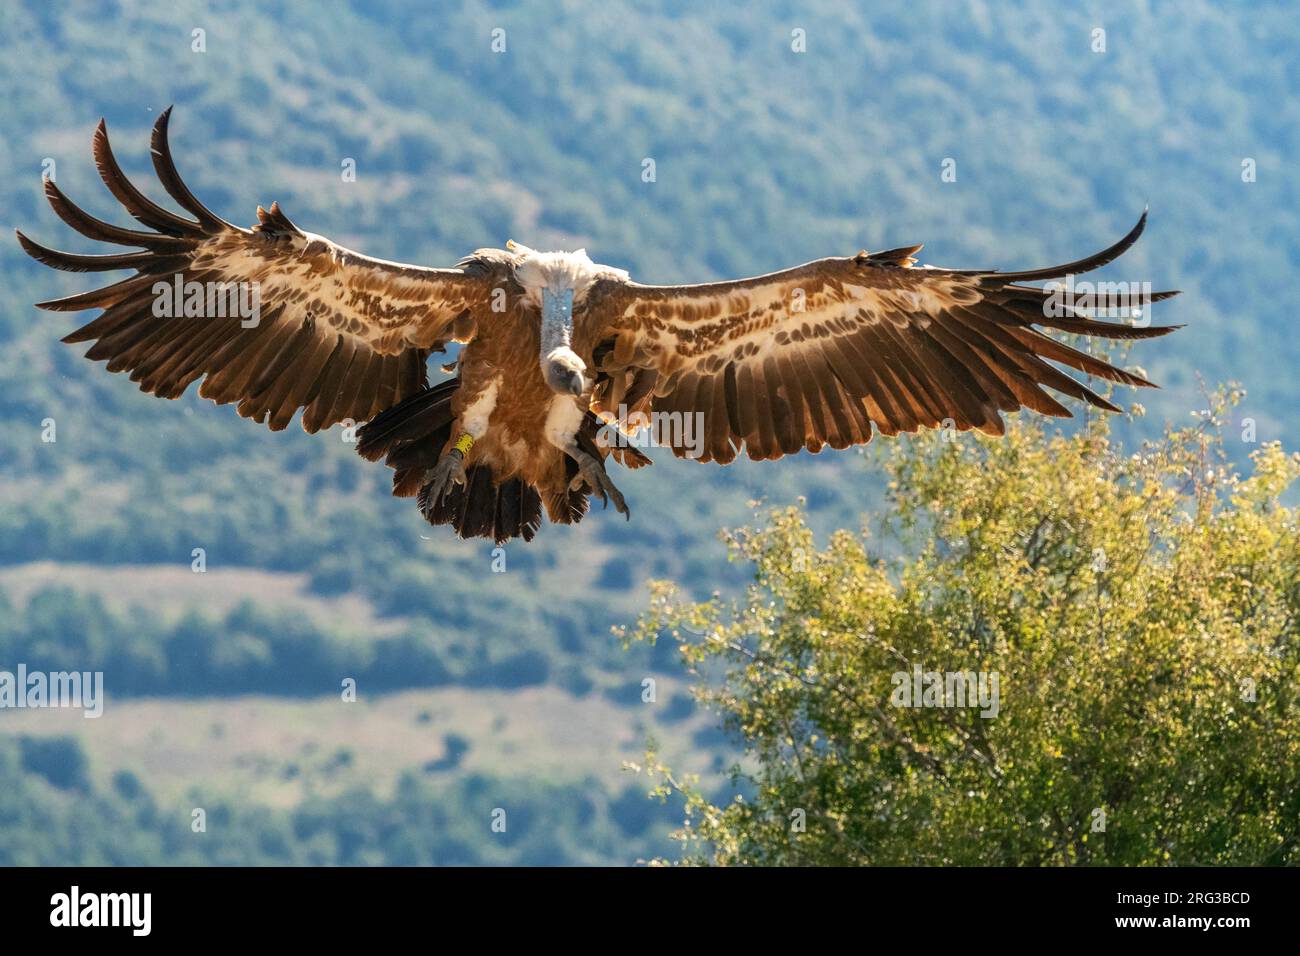 Griffon Vulture (Gyps fulvus) atterrissant sur le sol dans les contreforts des pré-Pyrénées dans le nord de l'Espagne. Banque D'Images